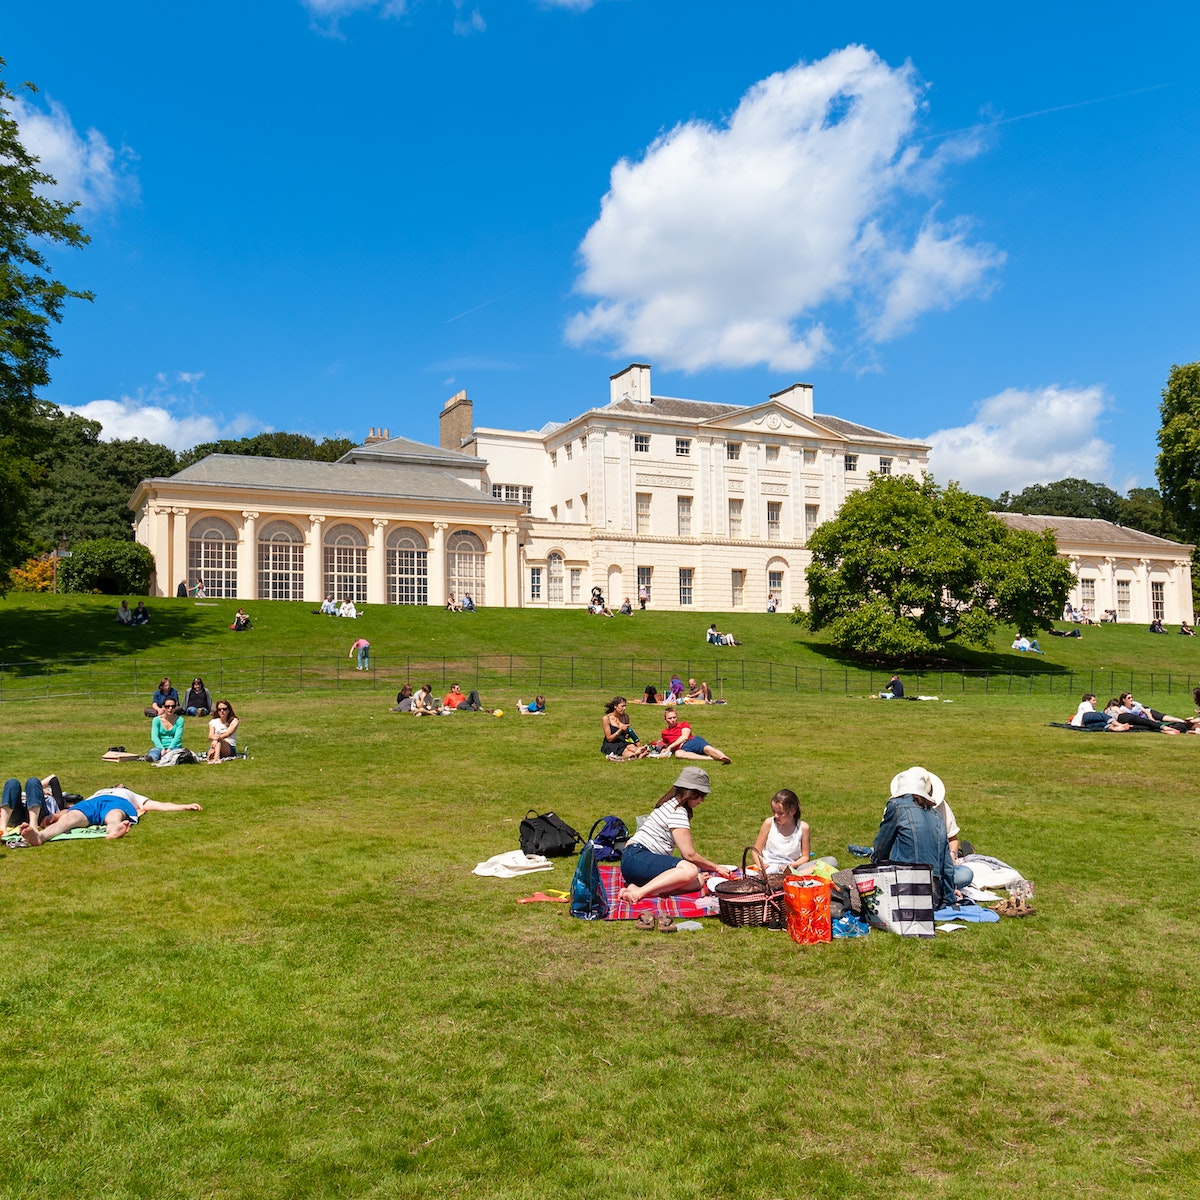 People having picnics at Kenwood House, Hampstead Heath.